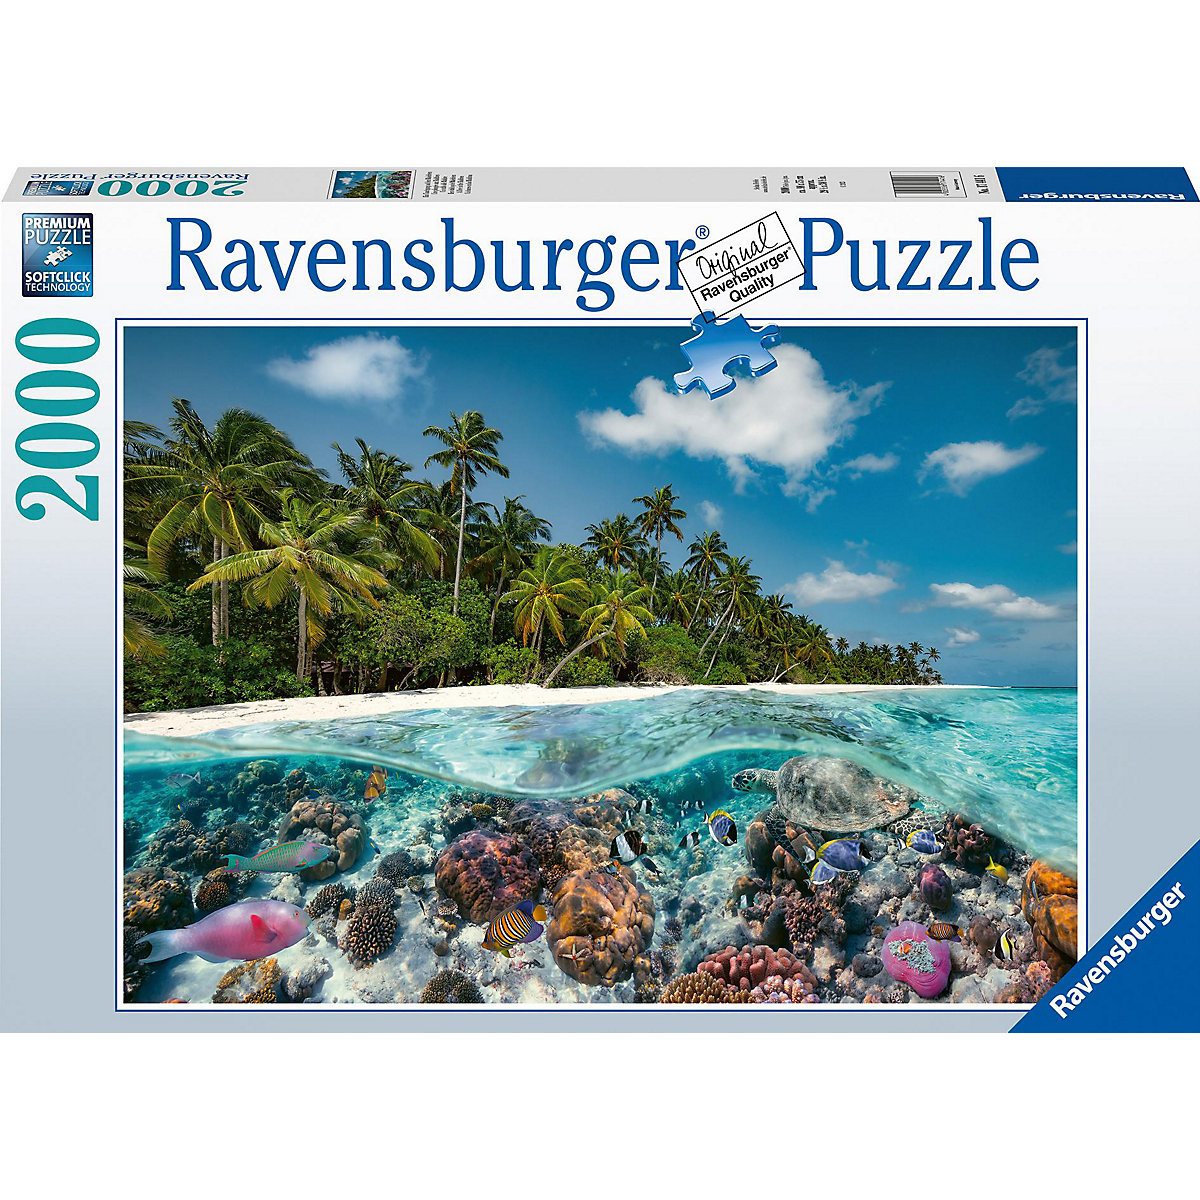 Ravensburger Puzzle 17441 Ein Tauchgang auf den Malediven 2000 Teile Puzzle für Erwachsene und Kinder ab 14 Jahren